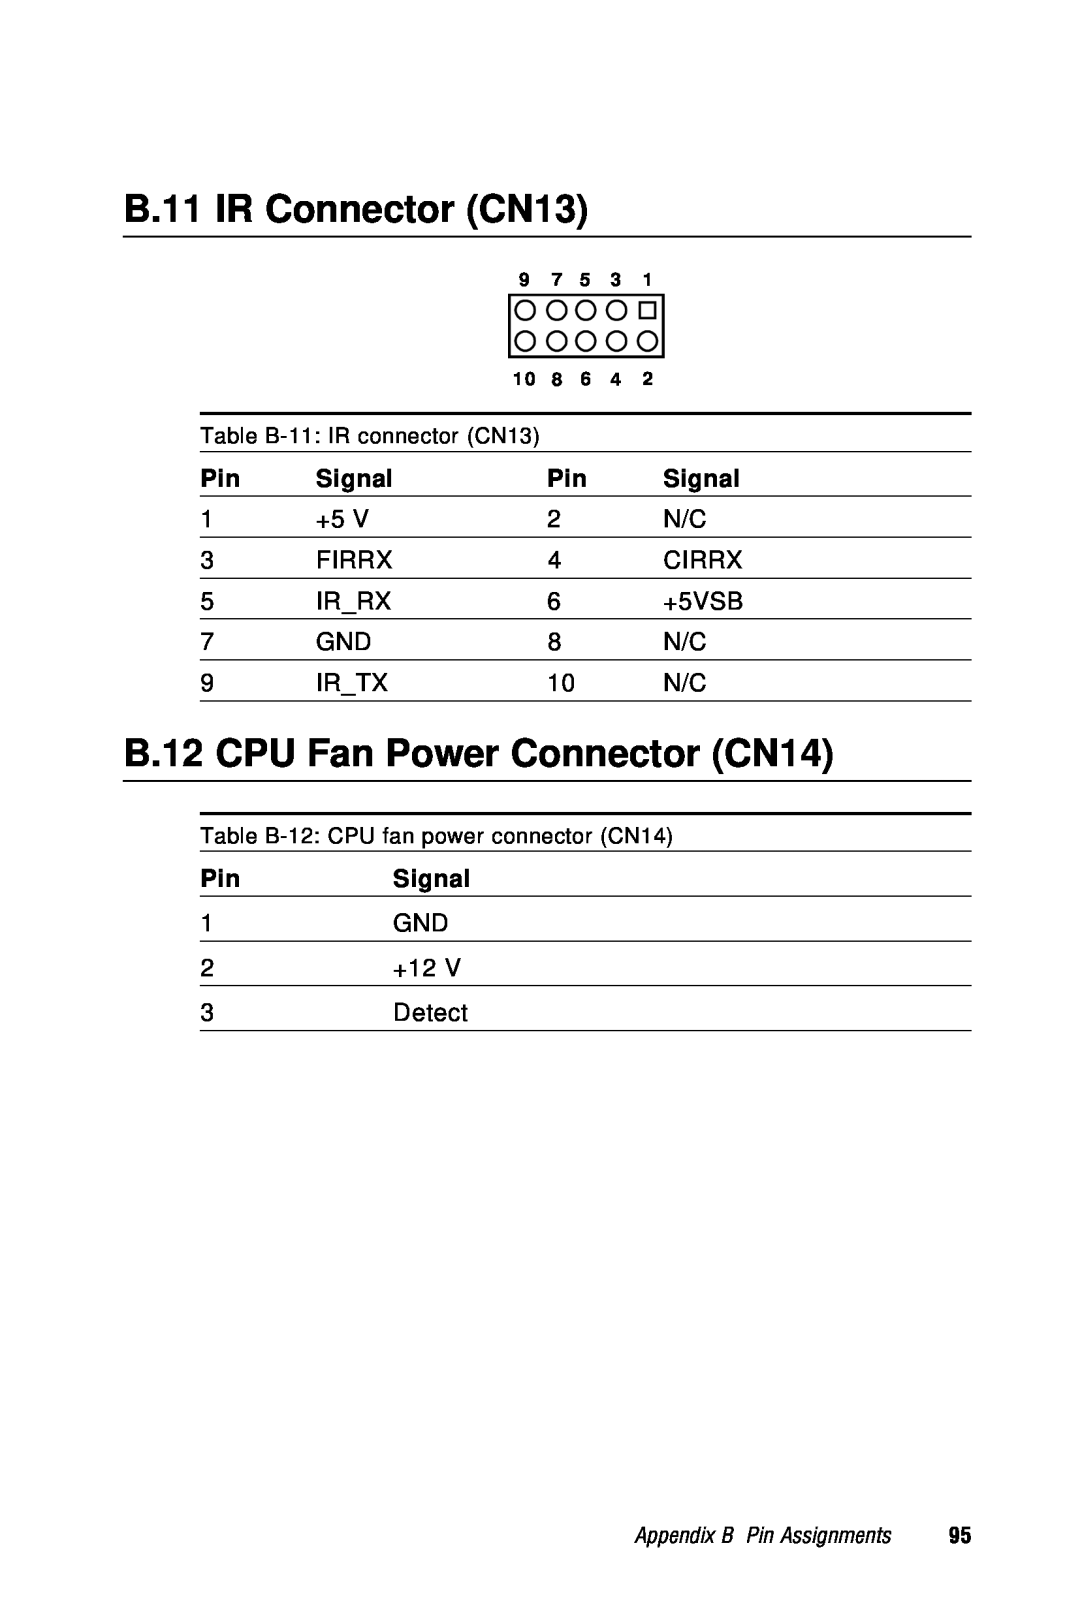 Advantech PCA-6359 user manual B.11 IR Connector CN13, B.12 CPU Fan Power Connector CN14, Table B-11 IR connector CN13 